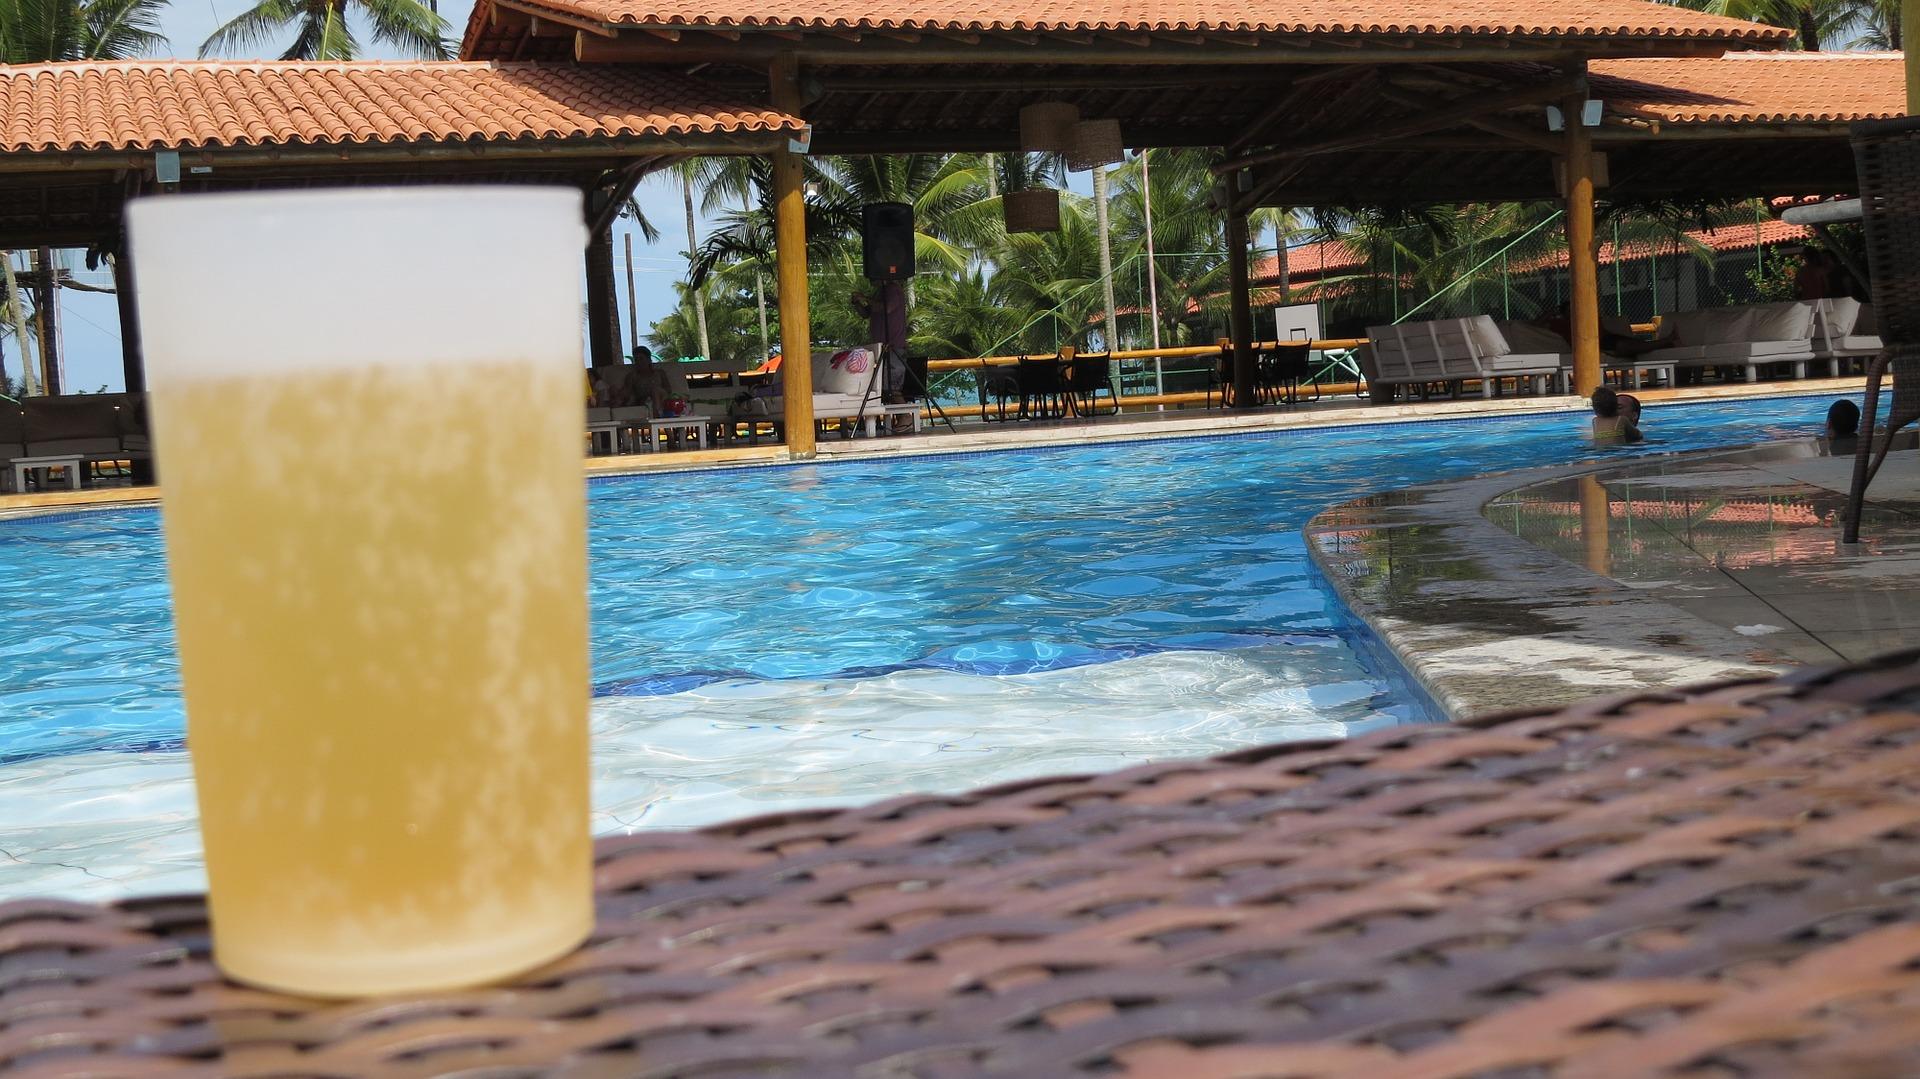 Un vaso de cerveza en una piscina. Fuente: Pixabay.